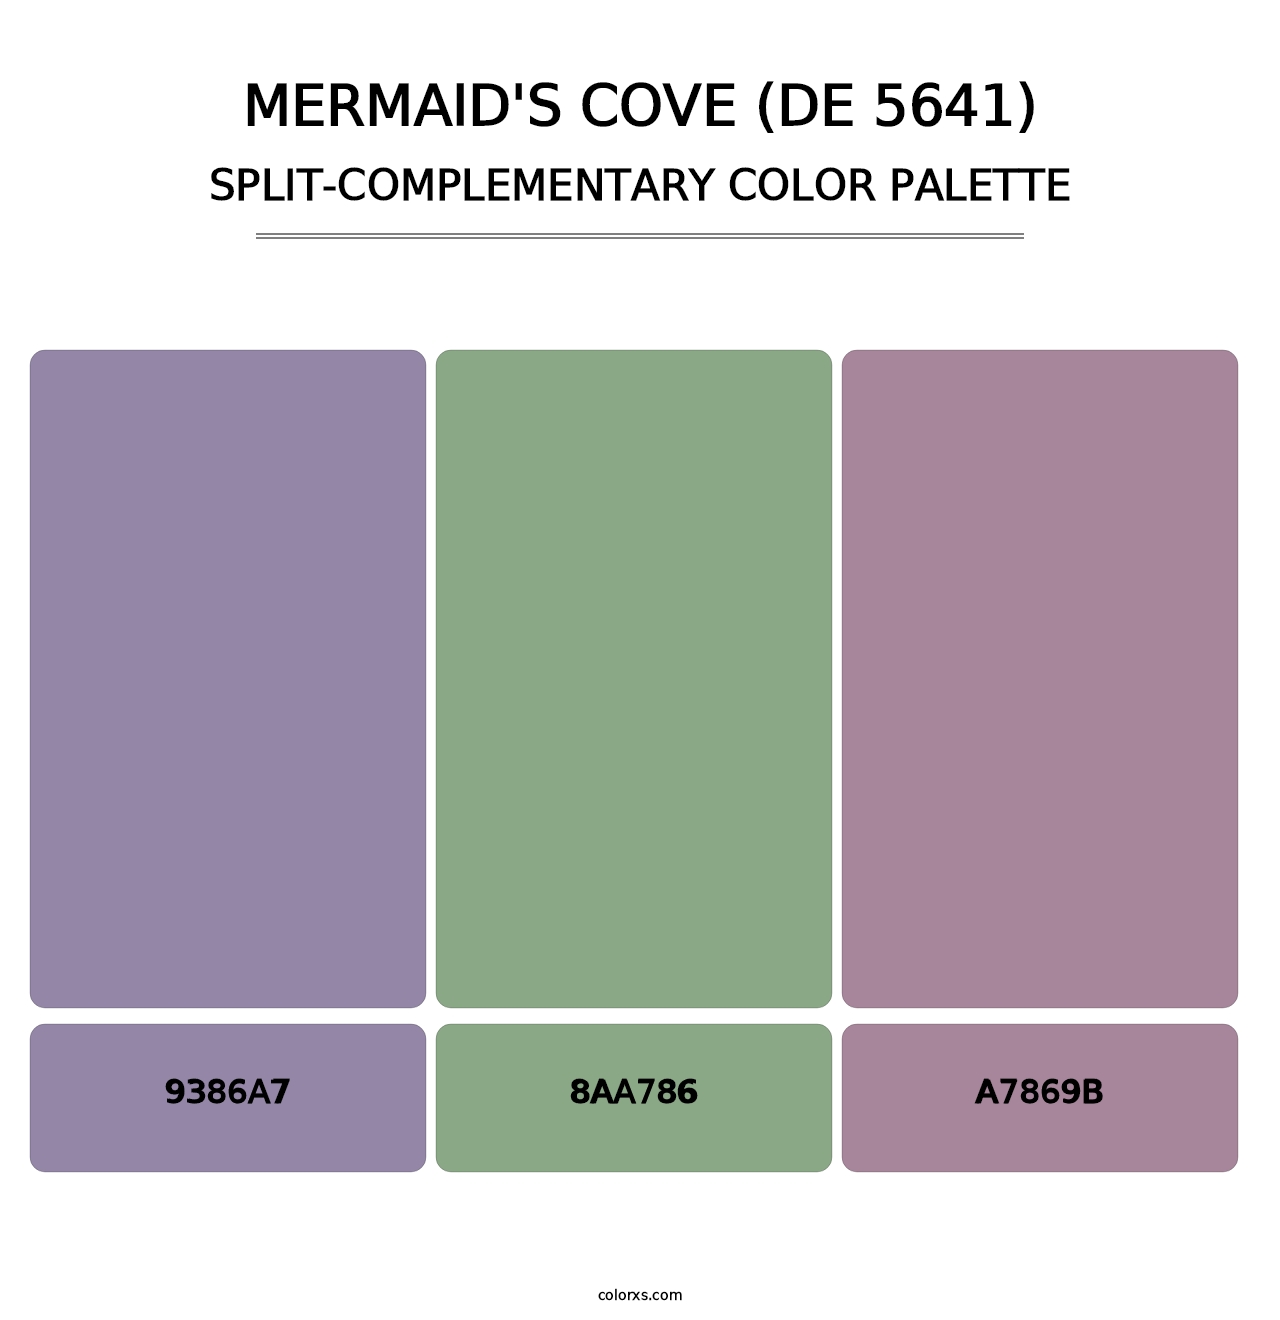 Mermaid's Cove (DE 5641) - Split-Complementary Color Palette